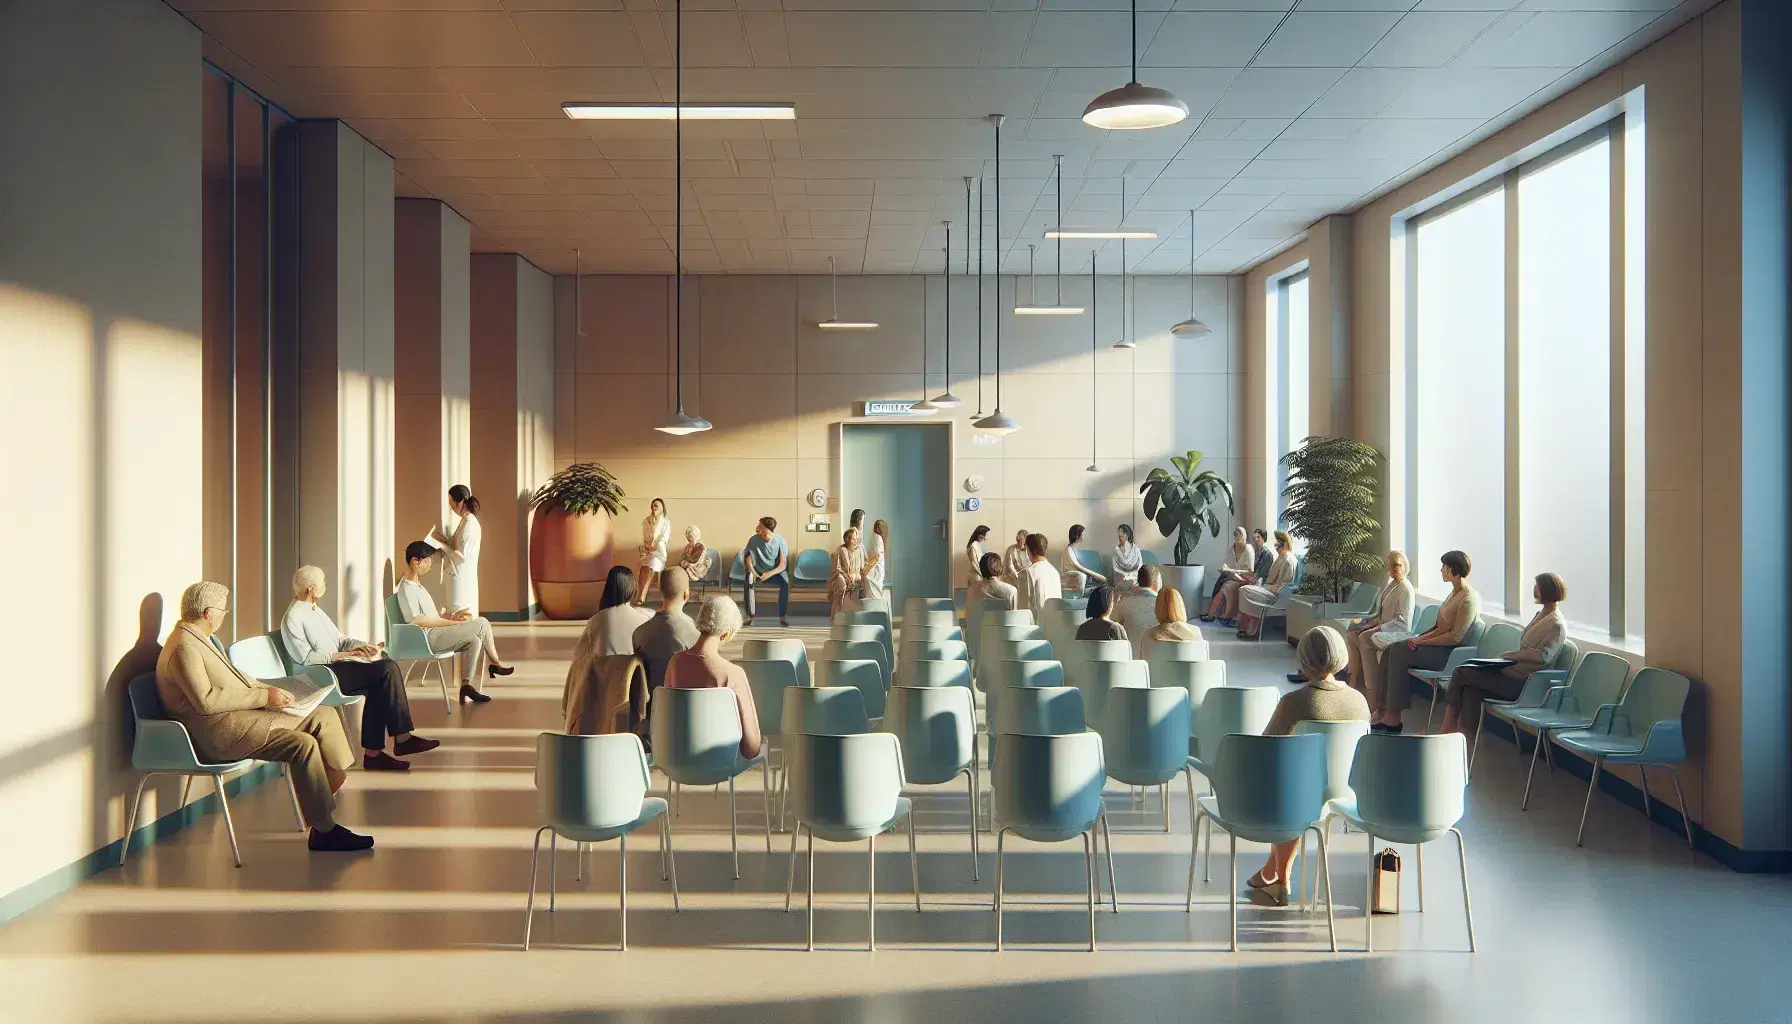 Sala de espera luminosa en centro de salud con personas diversas sentadas y de pie, sillas azules en primer plano y planta decorativa.